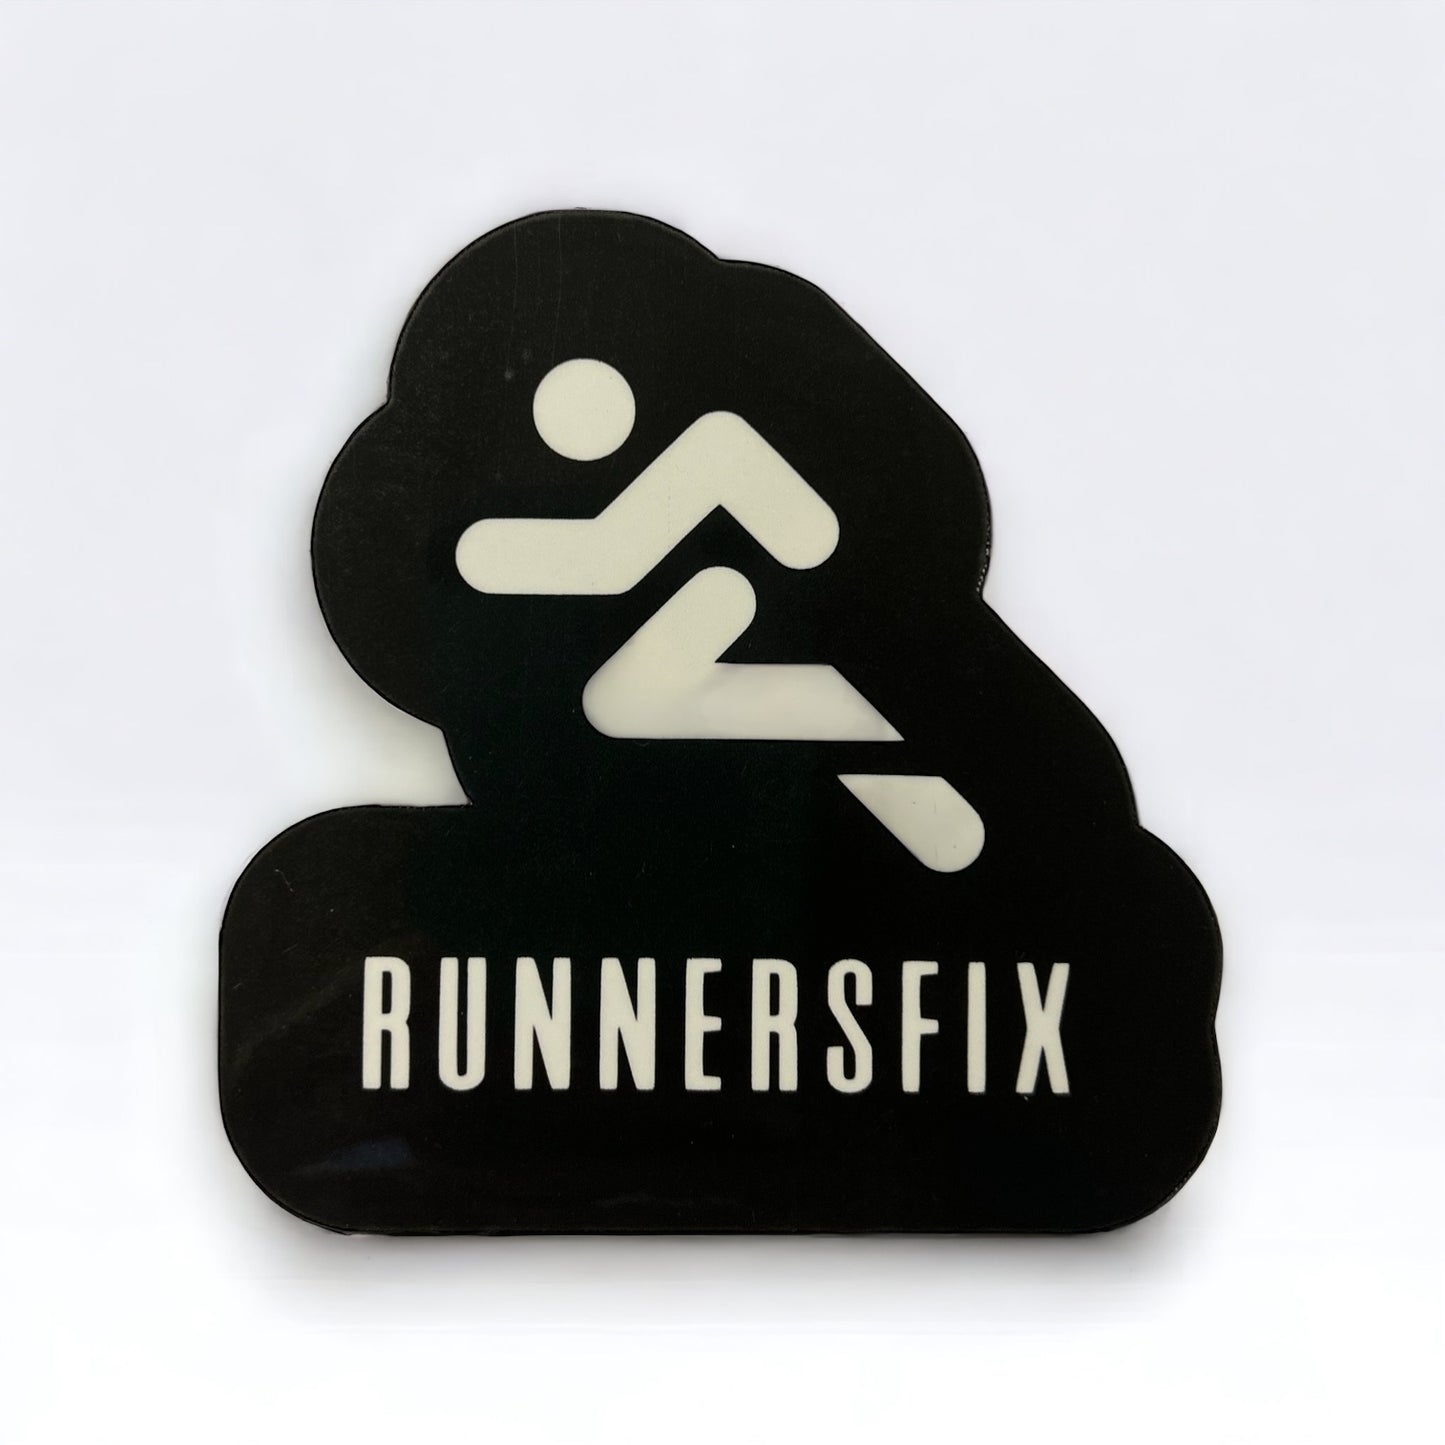 Runnersfix Sticker or Magnet